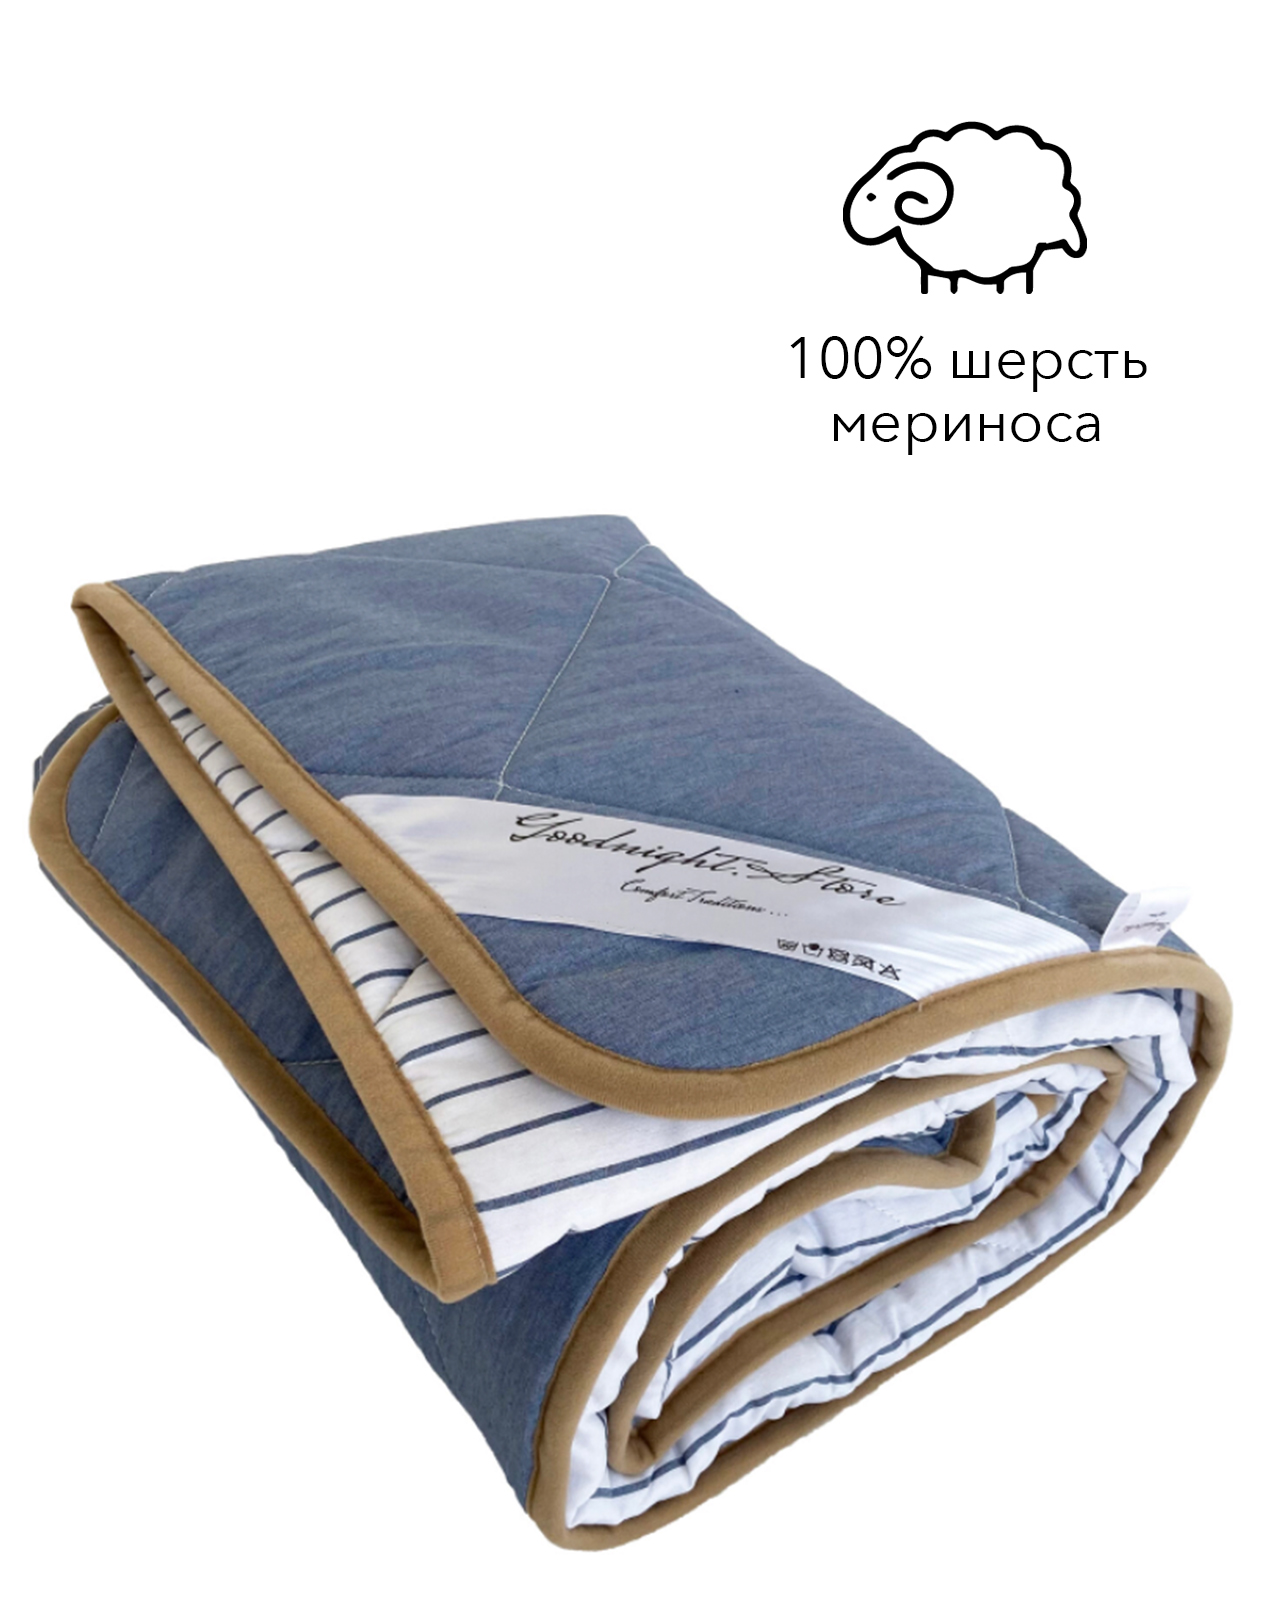 

Одеяло демисезонное из шерсти мериноса Goodnight Lite детское 100x140 см, Италия, голубое, 100% шерсть